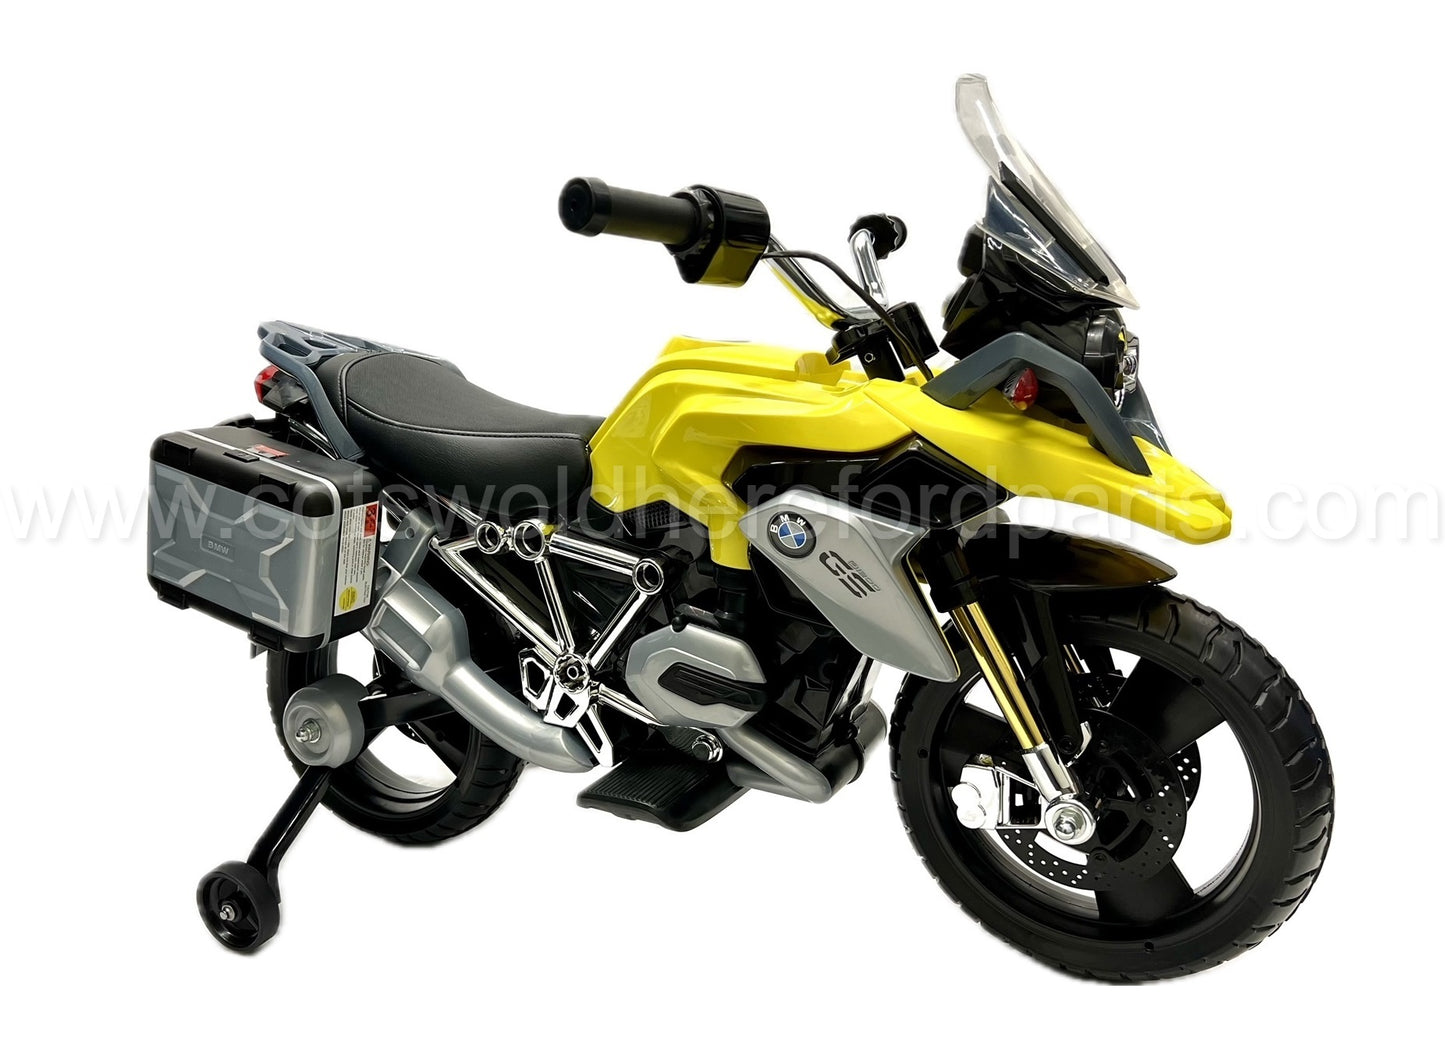 Genuine BMW Motorrad R1200GS Ride On Toy Age: 3-8 years 80935A627B3